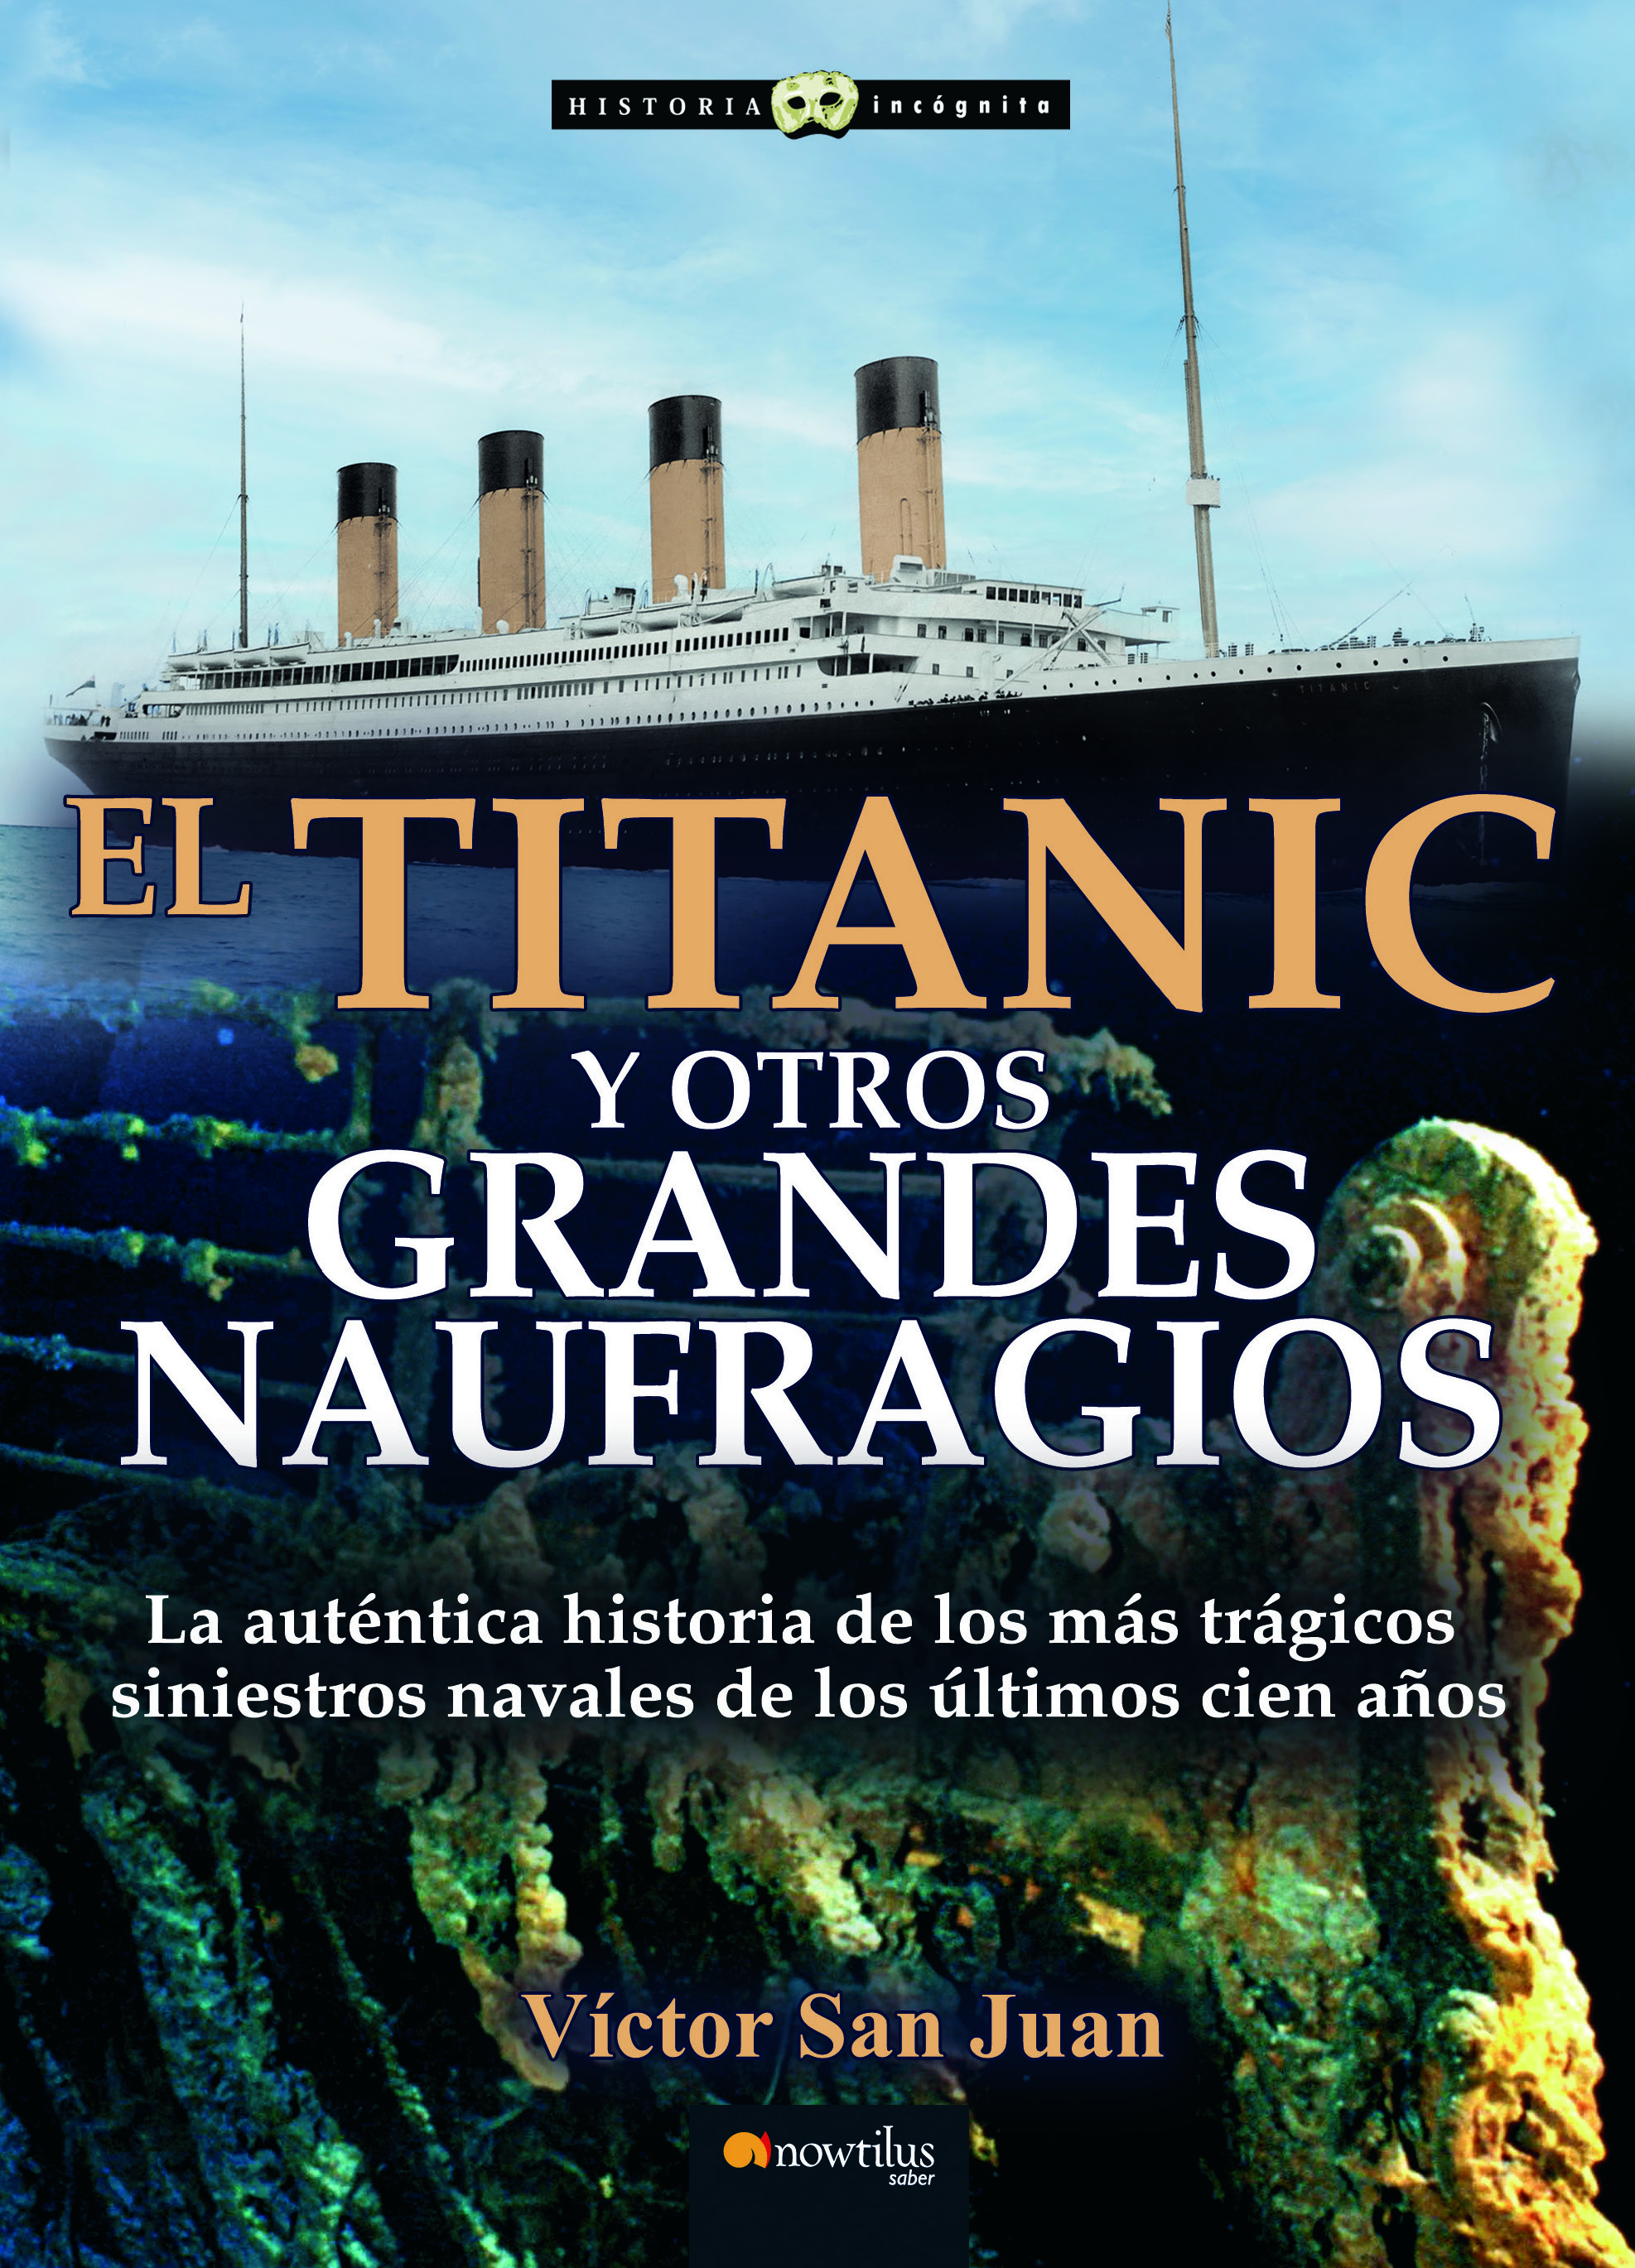 Titanic y otros grandes naufragios n. e.